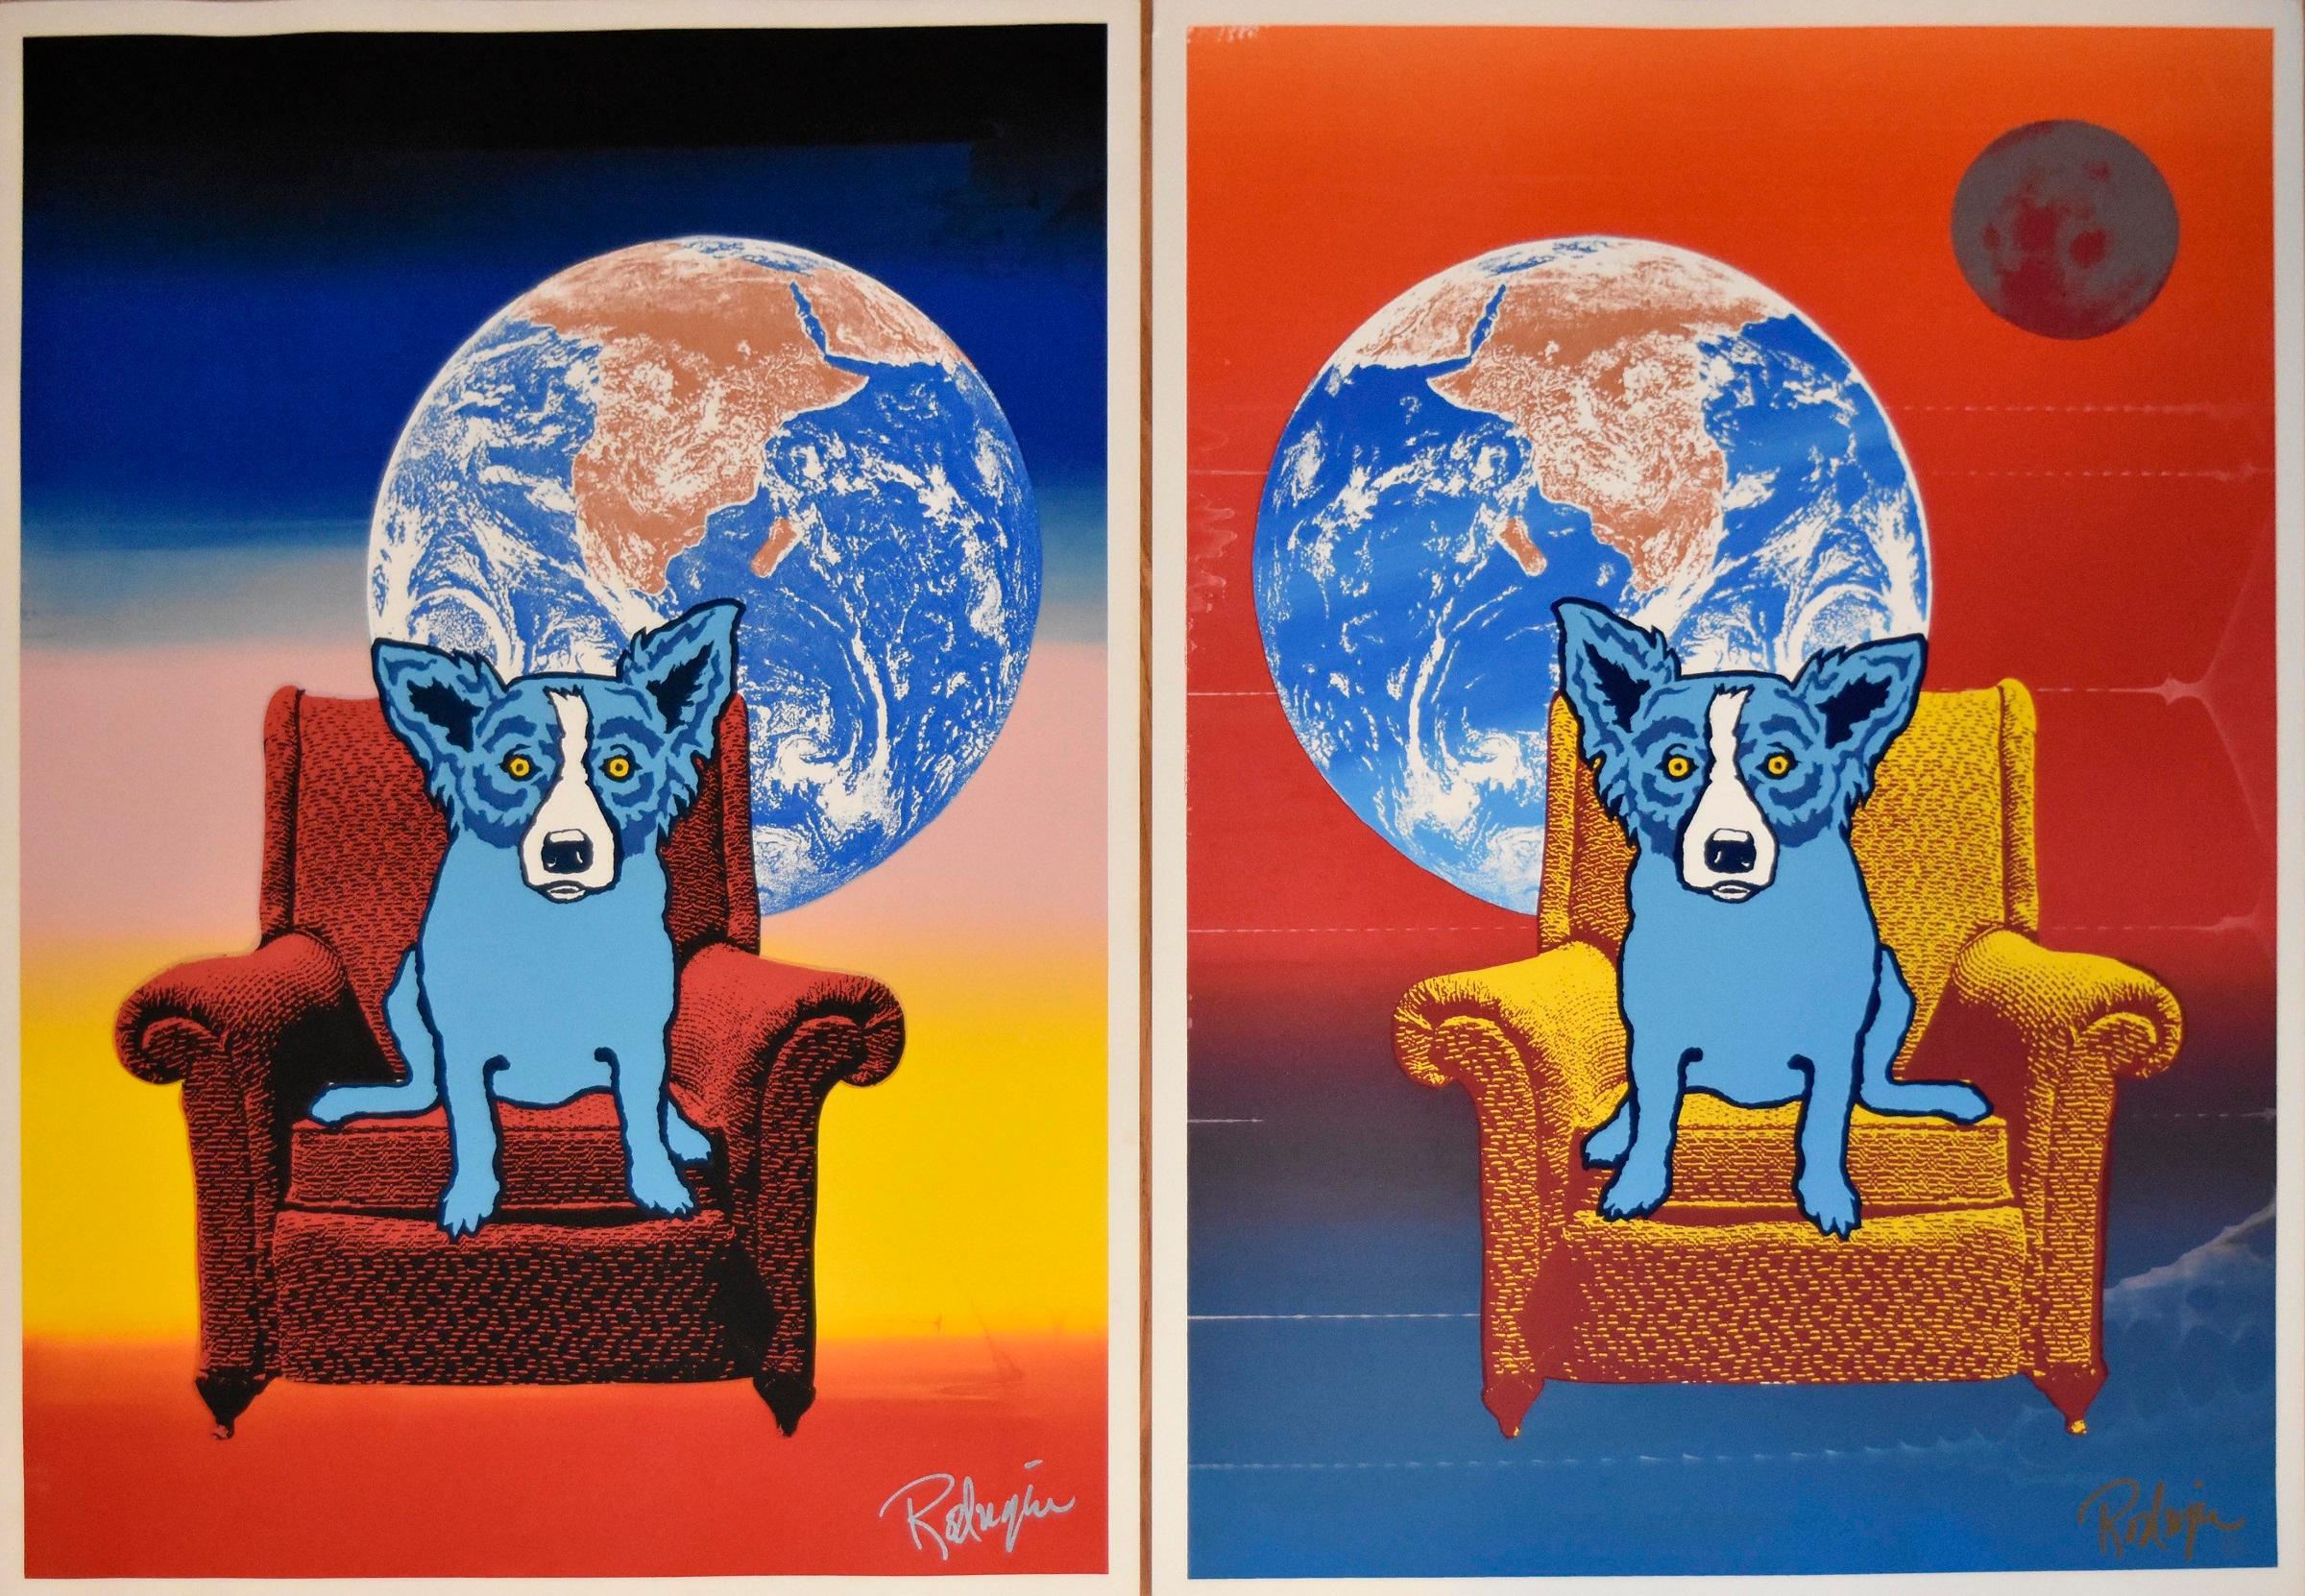 Space Chair - Strato Lounger Combination - Signierter Siebdruck - Blauer Hund